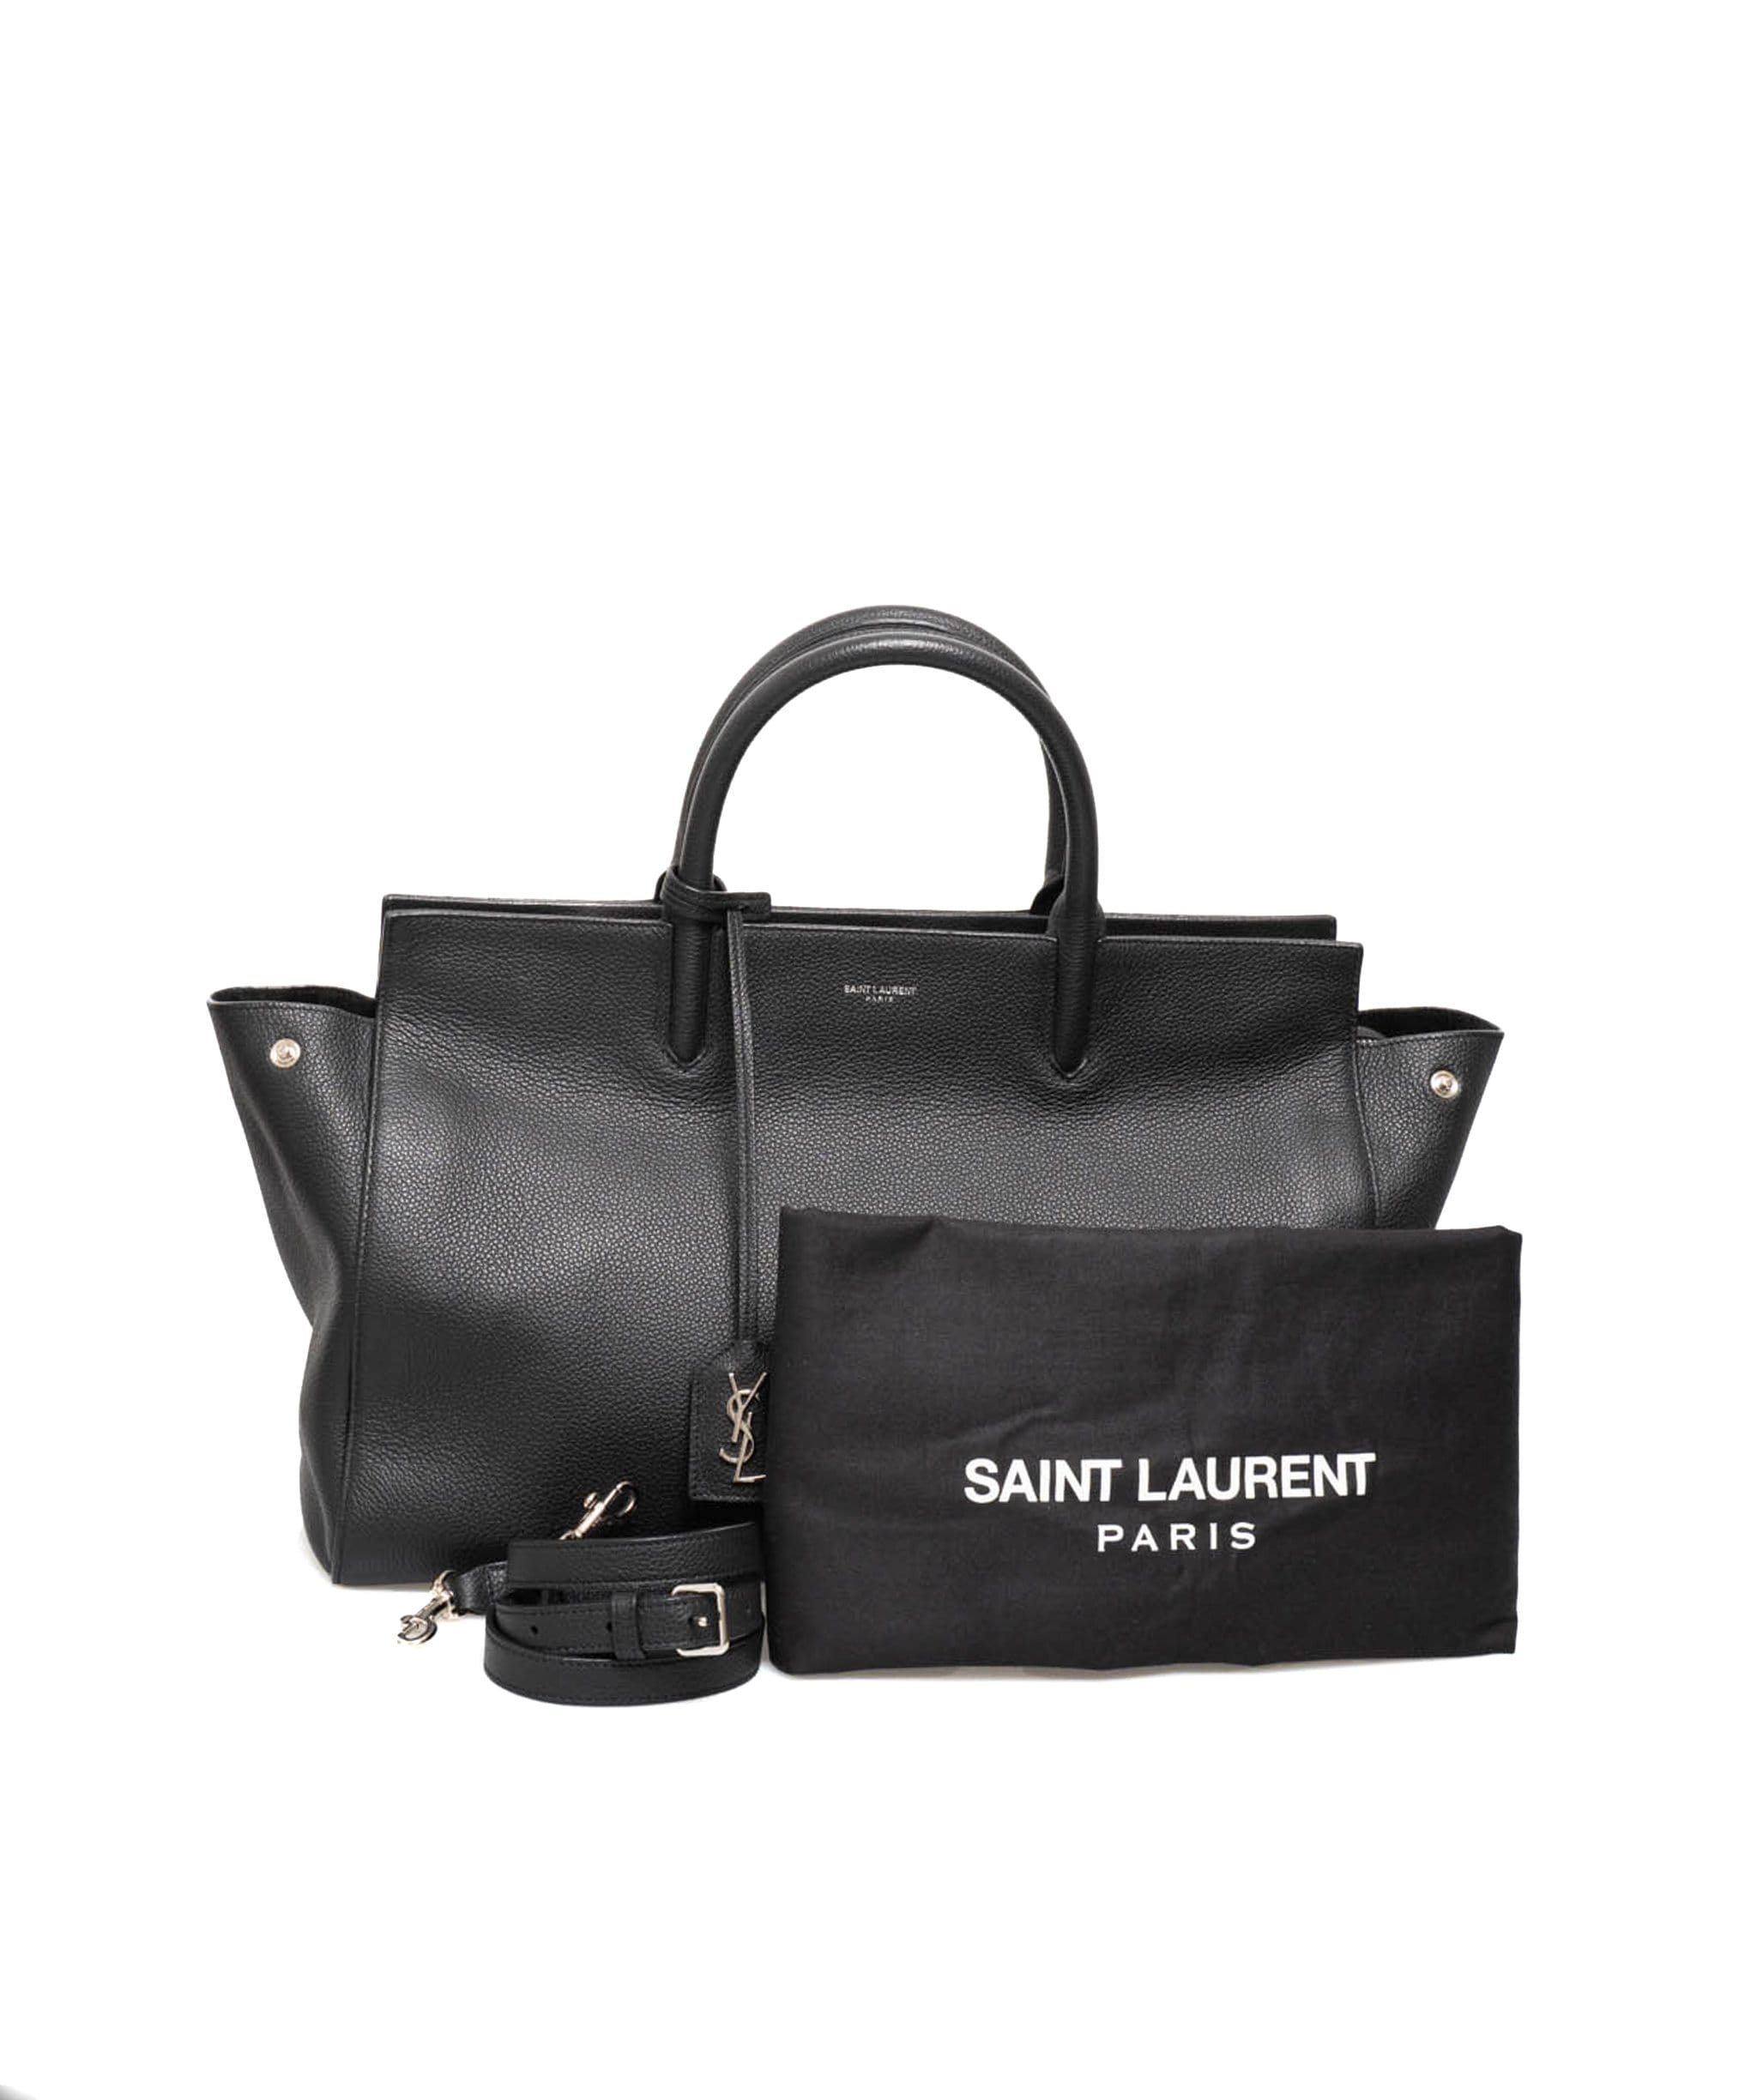 Chanel Saint Laurent Paris Sac De Jour 48 hour - ASL1826